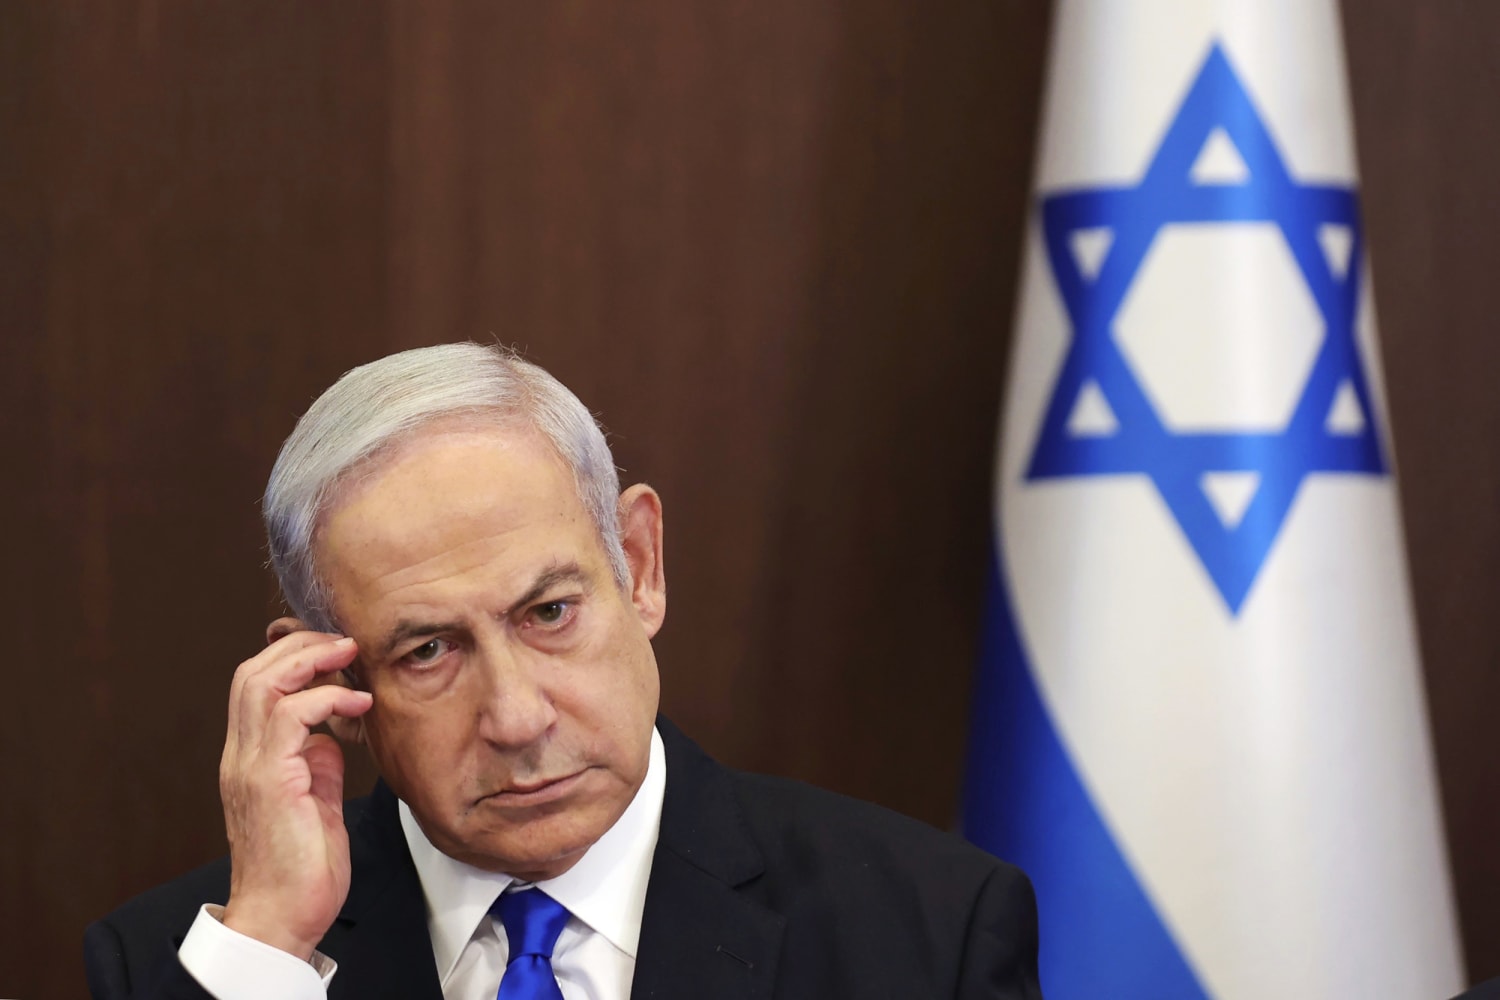 Netanyahu sólo aceptará un acuerdo de rehenes si las encuestas de opinión son buenas para él, dicen familias israelíes